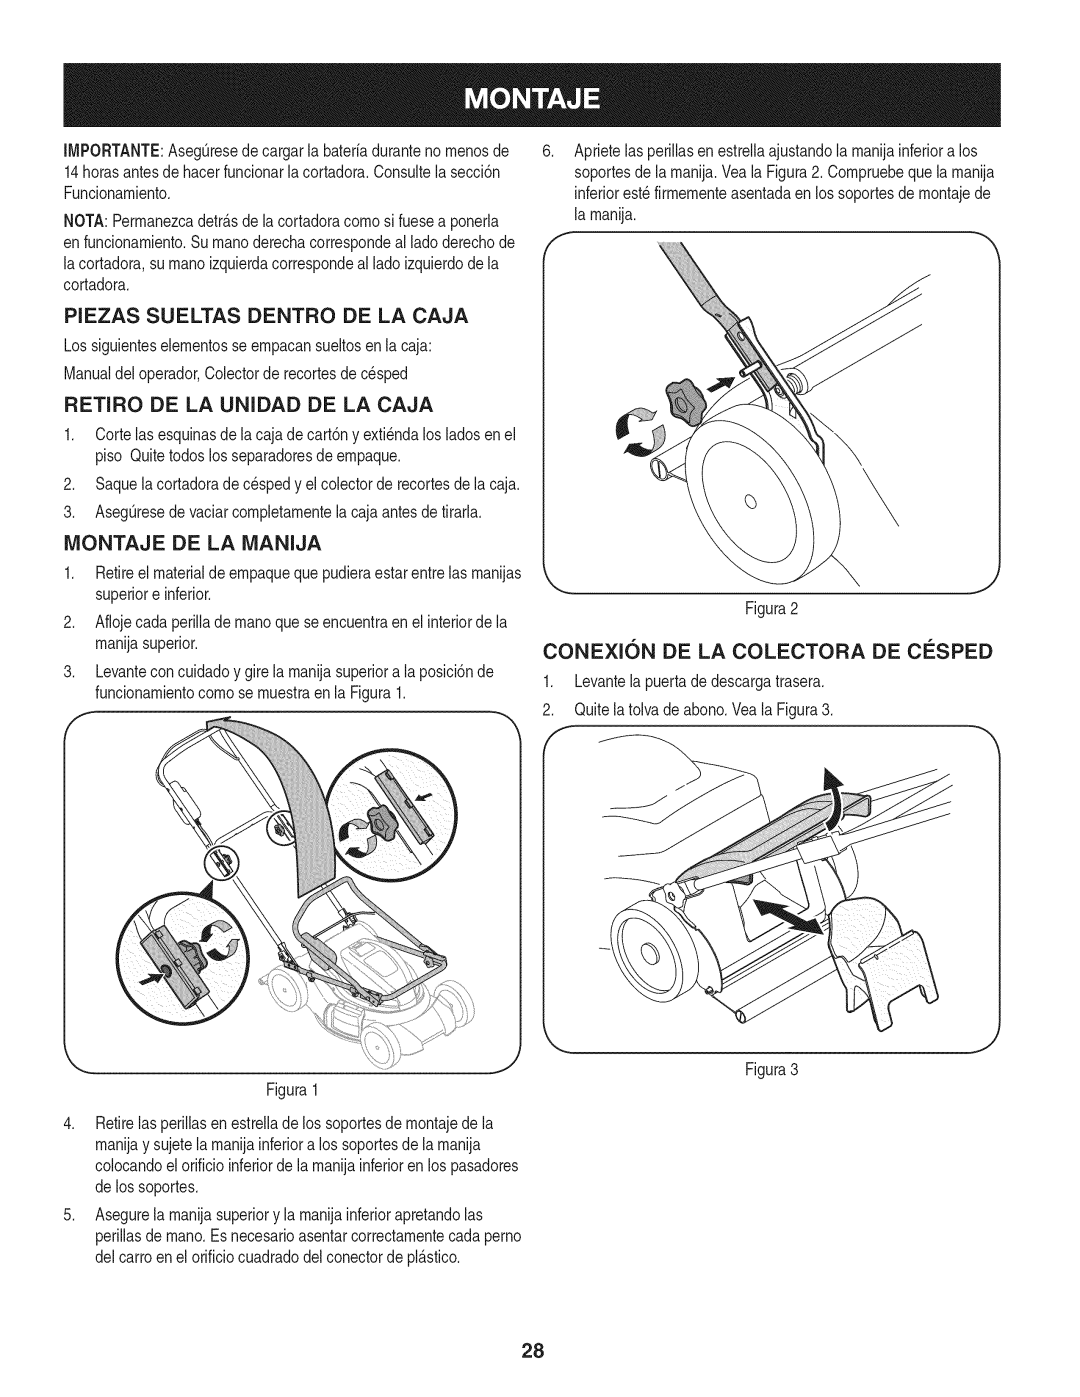 Craftsman 247.370480 manual Piezas Sueltas Dentro De La Caja, Retiro De La Unidad De La Caja, Montaje De La Manija 